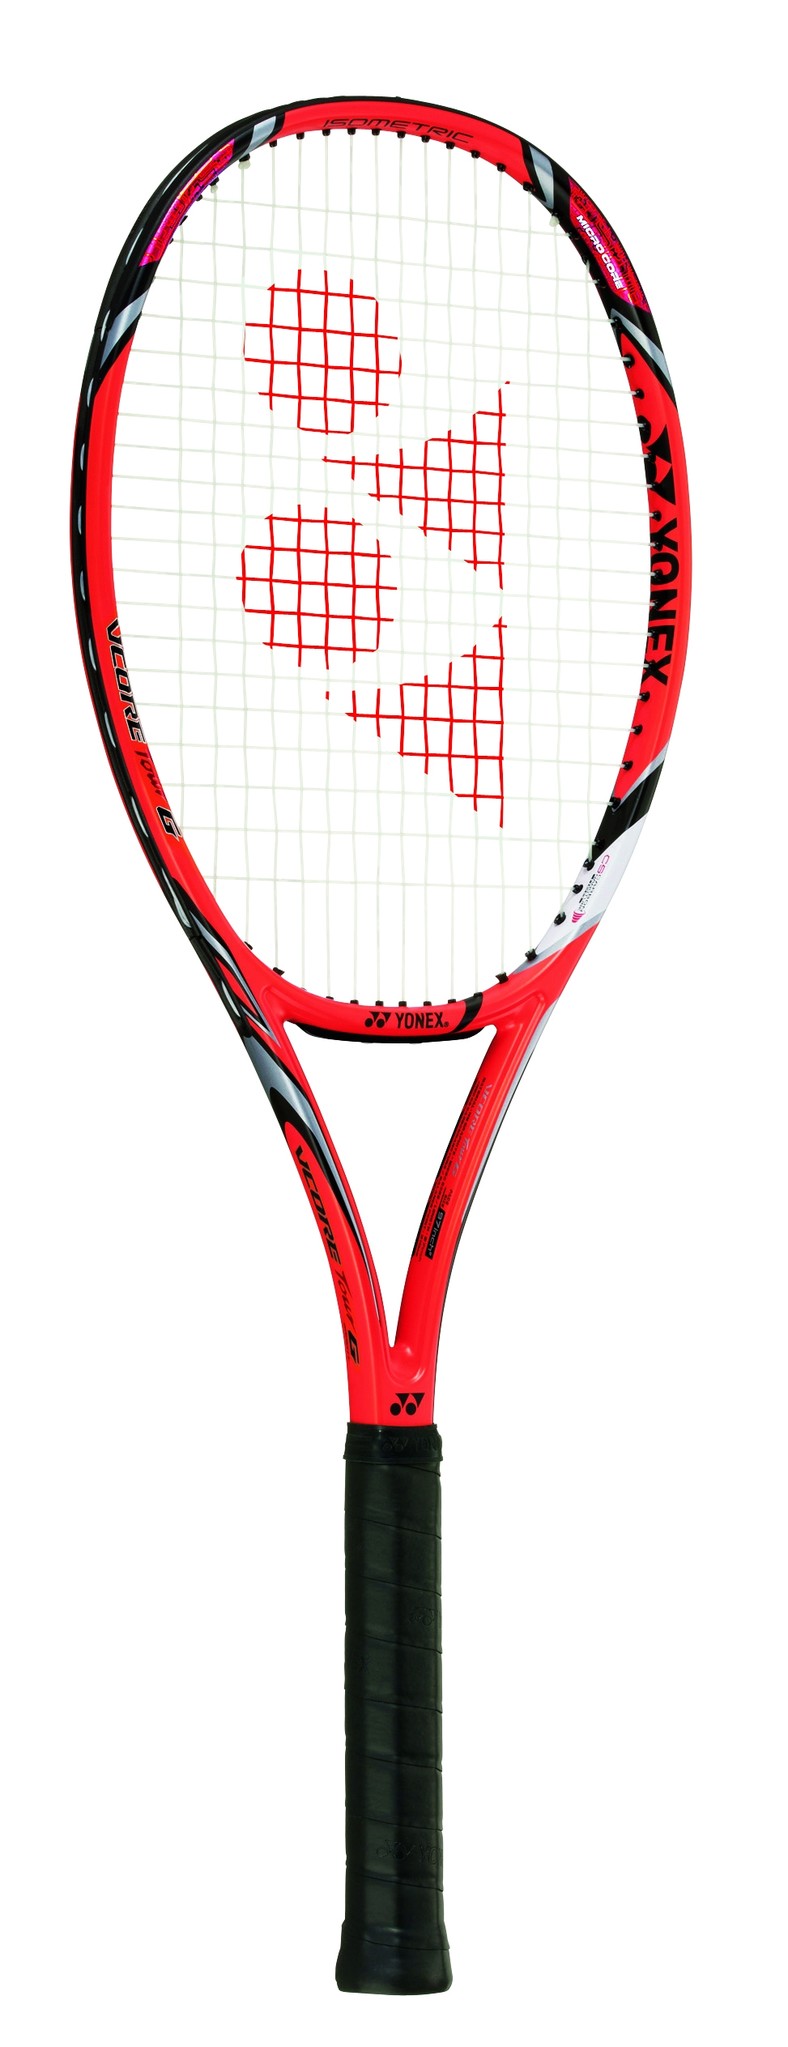 270インチフレーム厚テニスラケット ヨネックス ブイコア ツアー ジー 2014年モデル (G3)YONEX VCORE TOUR G 2014